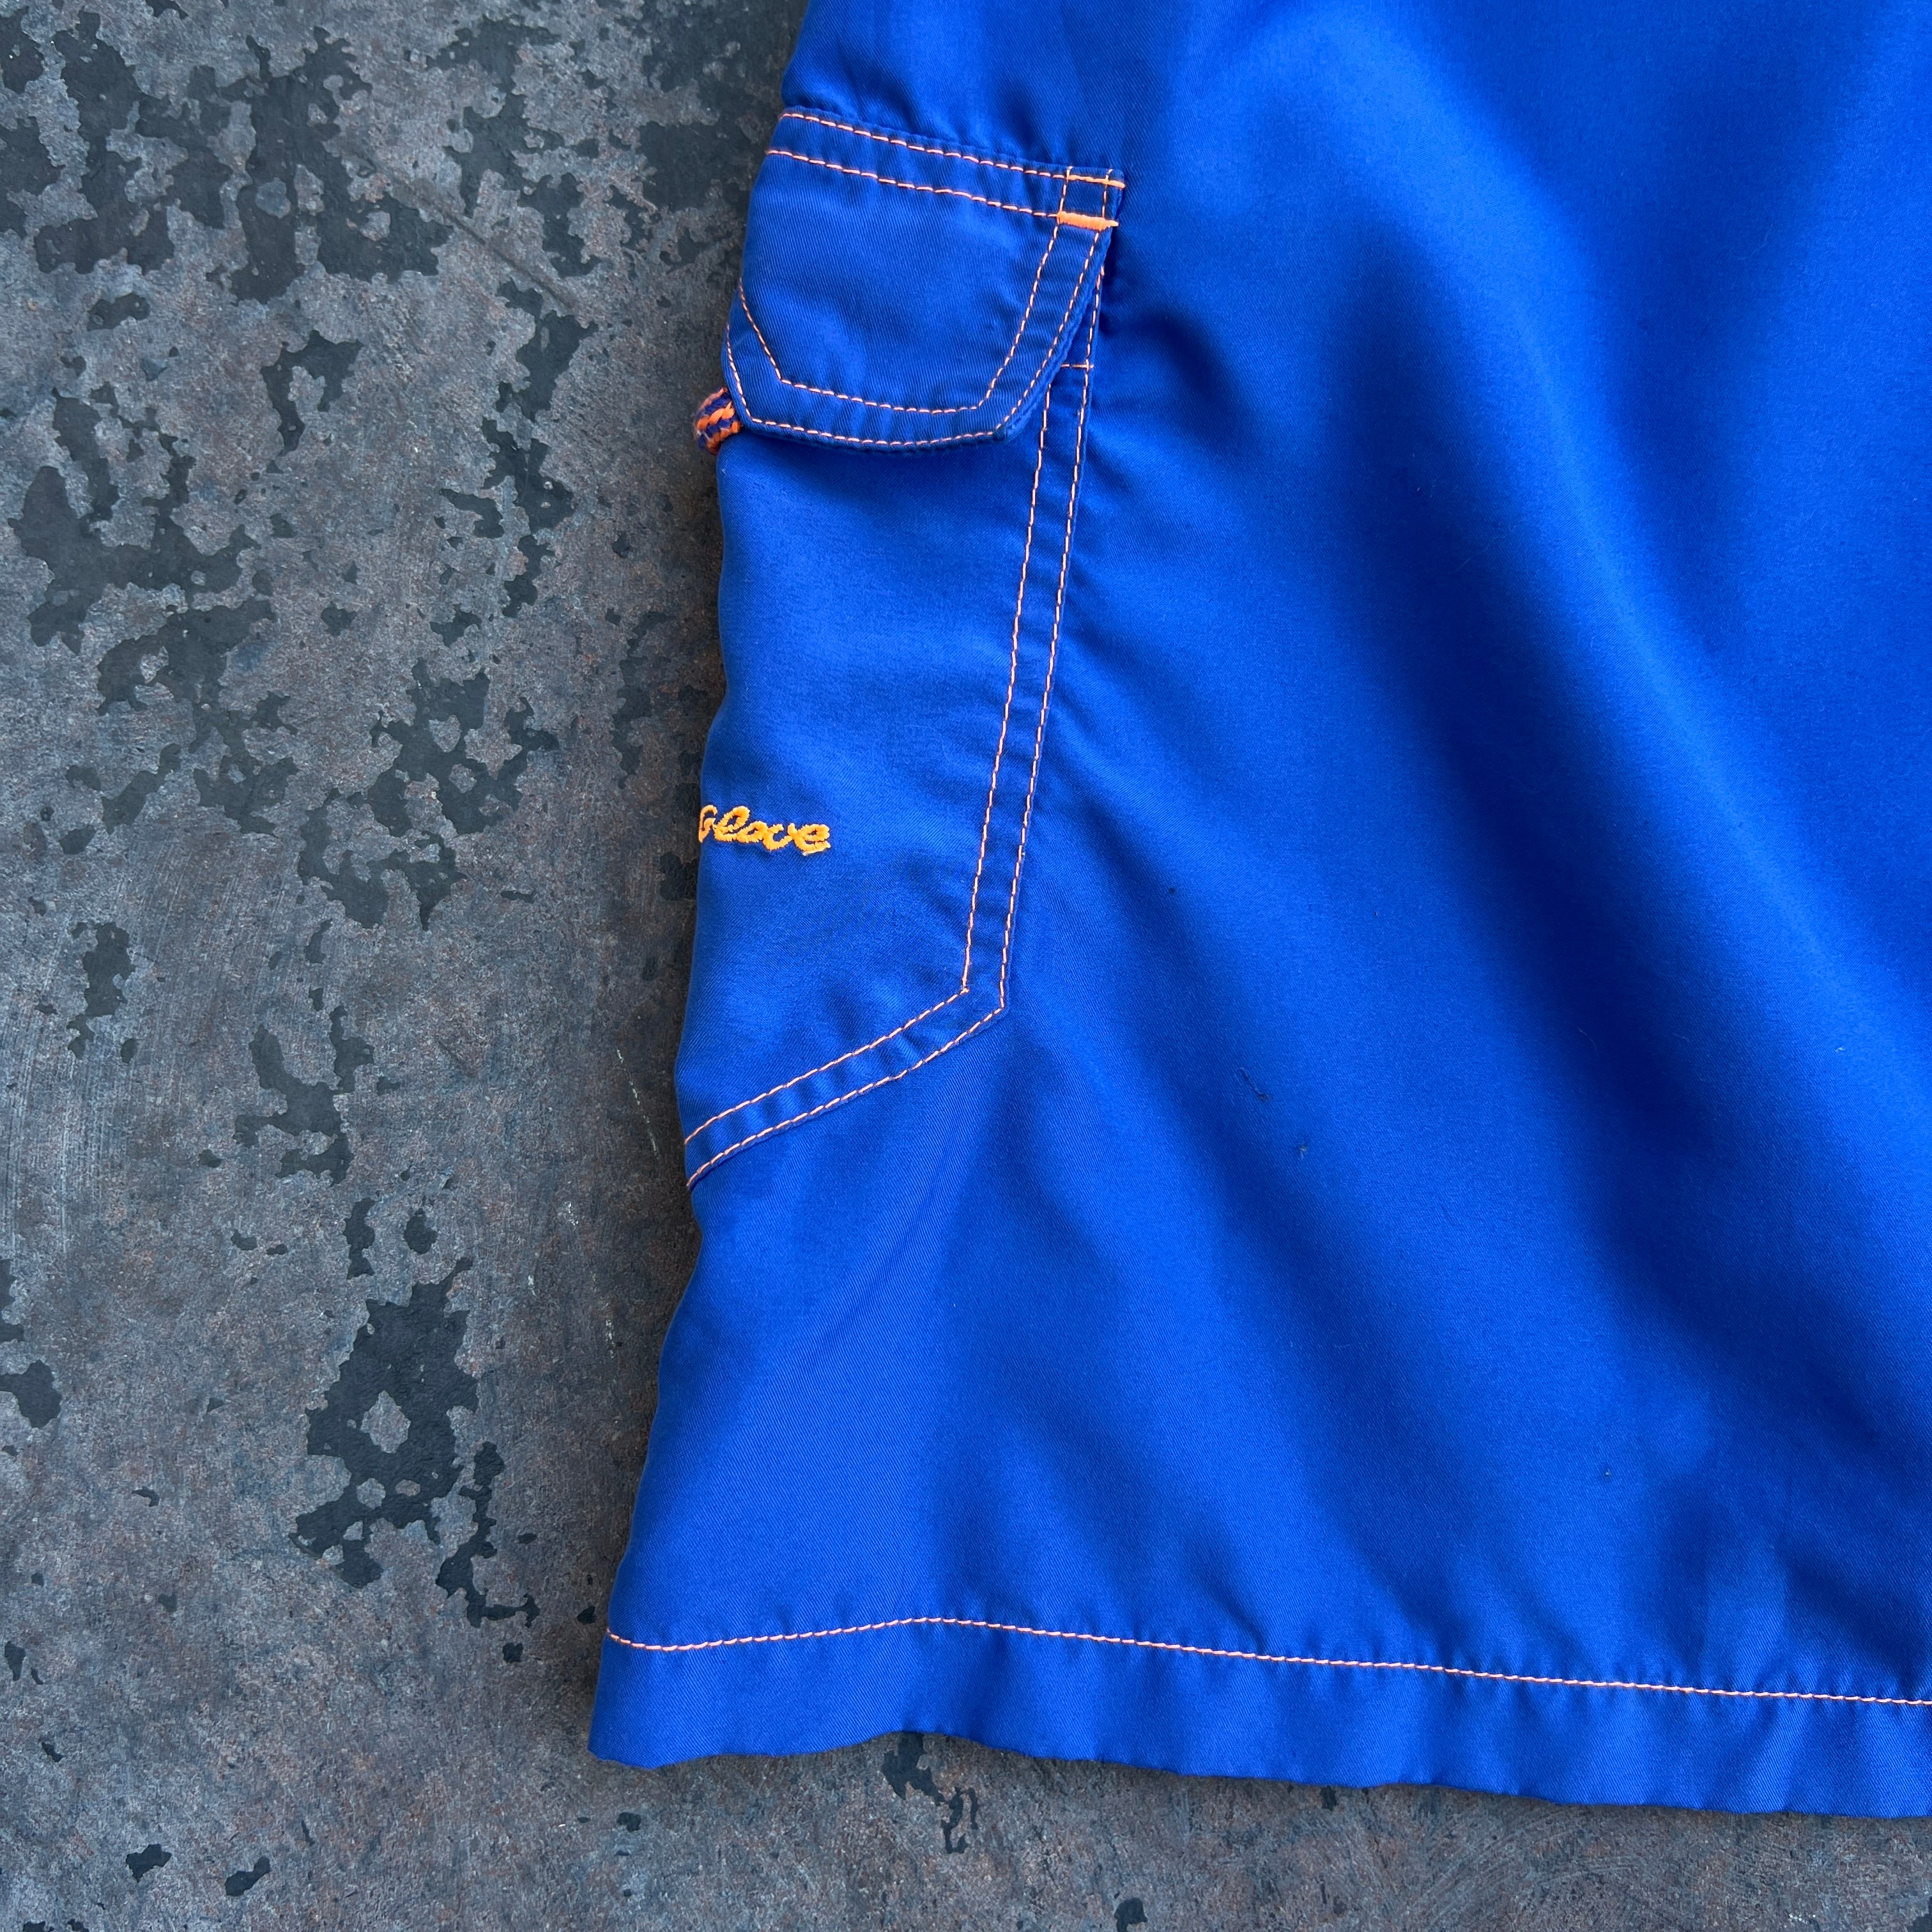 Blue Mini Cargo Skirt